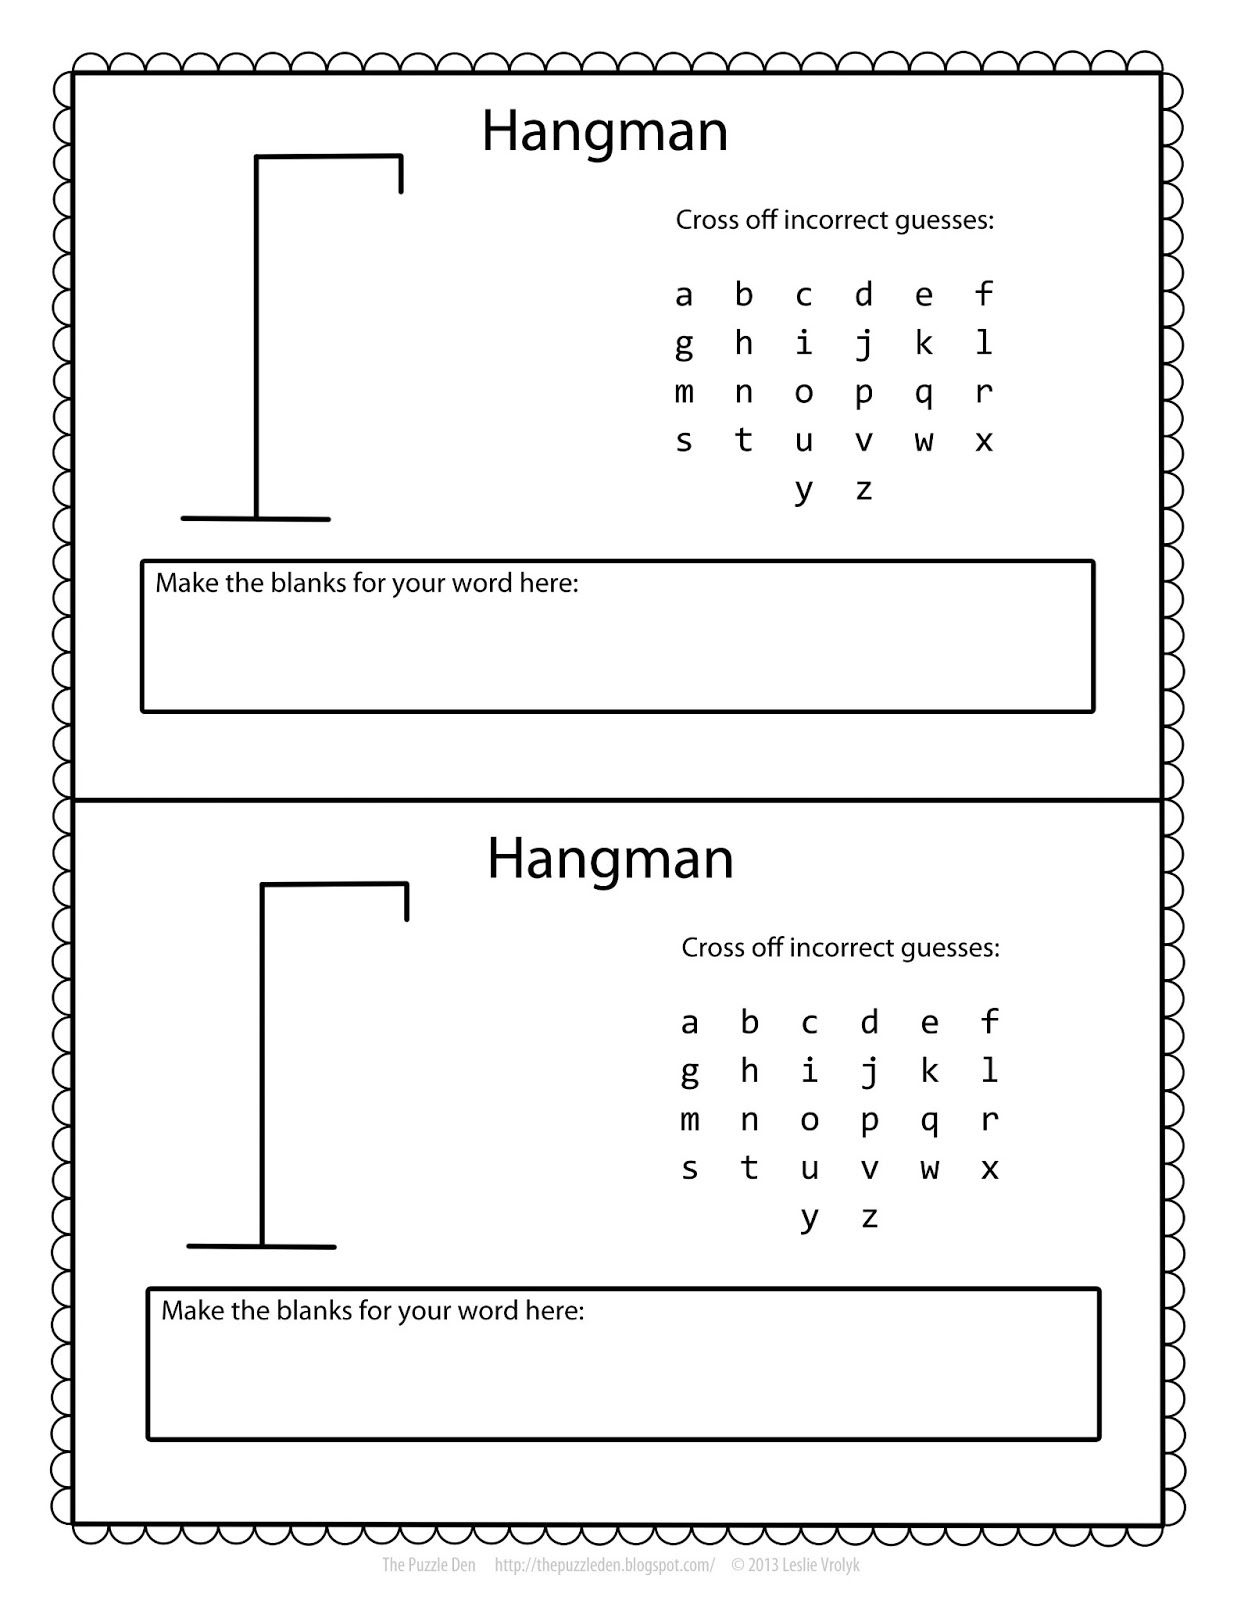 Free Hangman Template | Printable Games For Kids, Hangman Words with regard to Free Printable Hangman Game